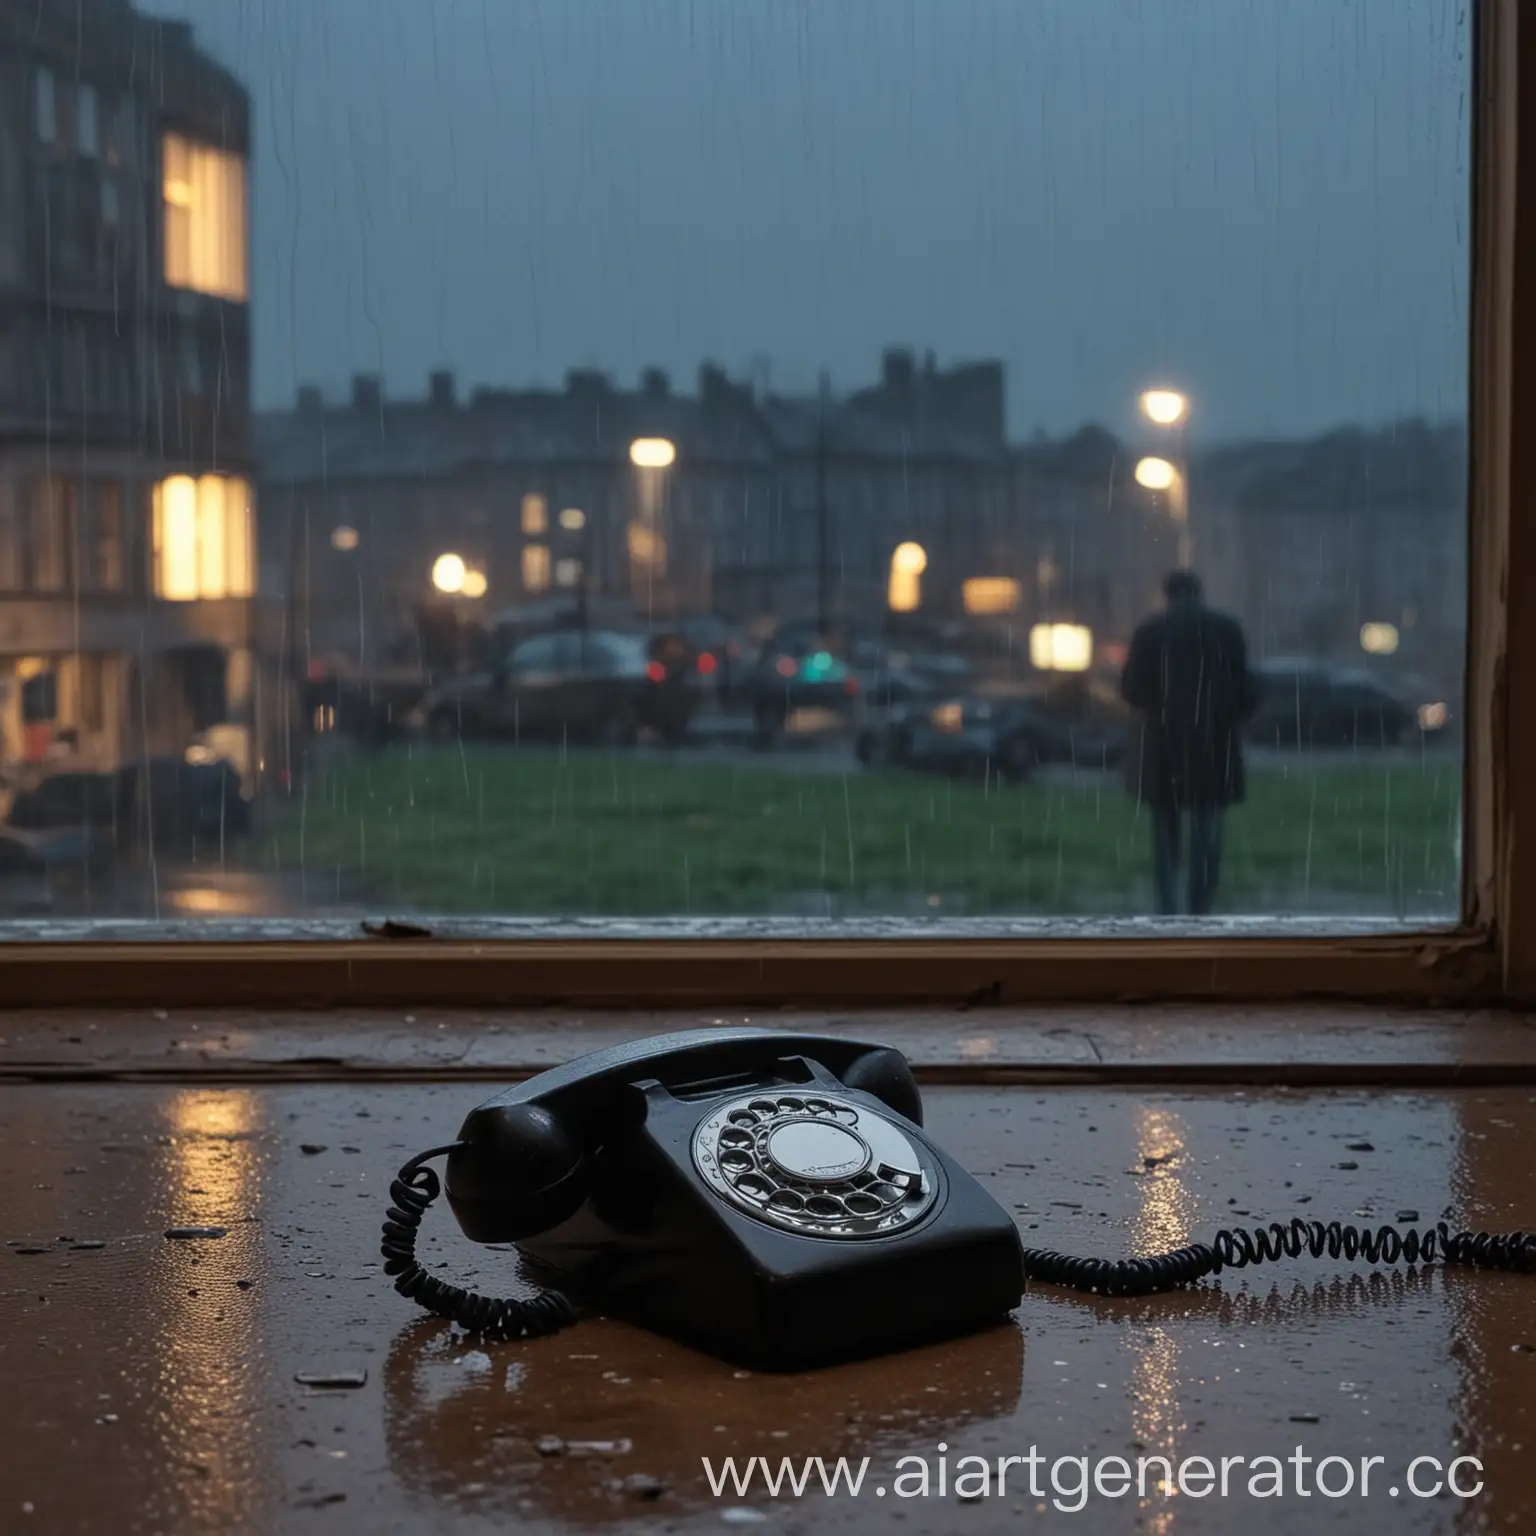 Старый телефон, его трубка с него снята и лежит рядом. На фоне ночь, окно с дождем, за окном в далеке стоит мужчина